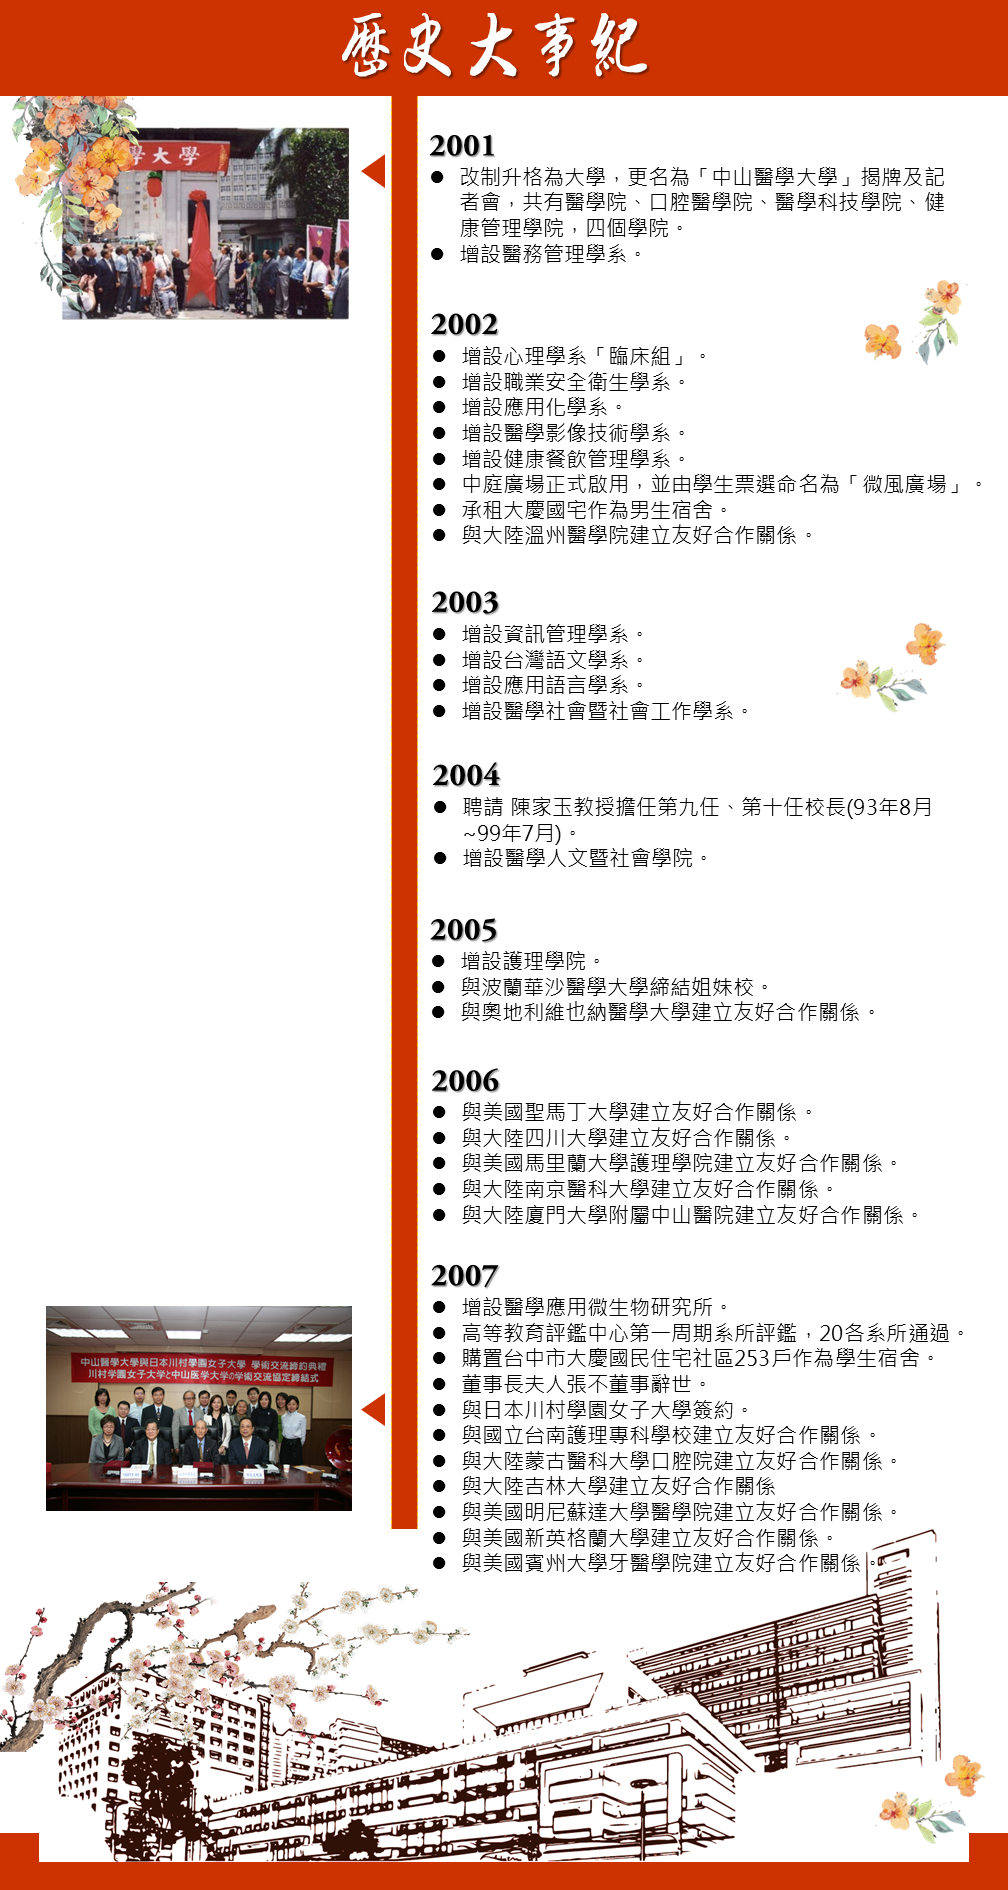 歷史大事2001~2007